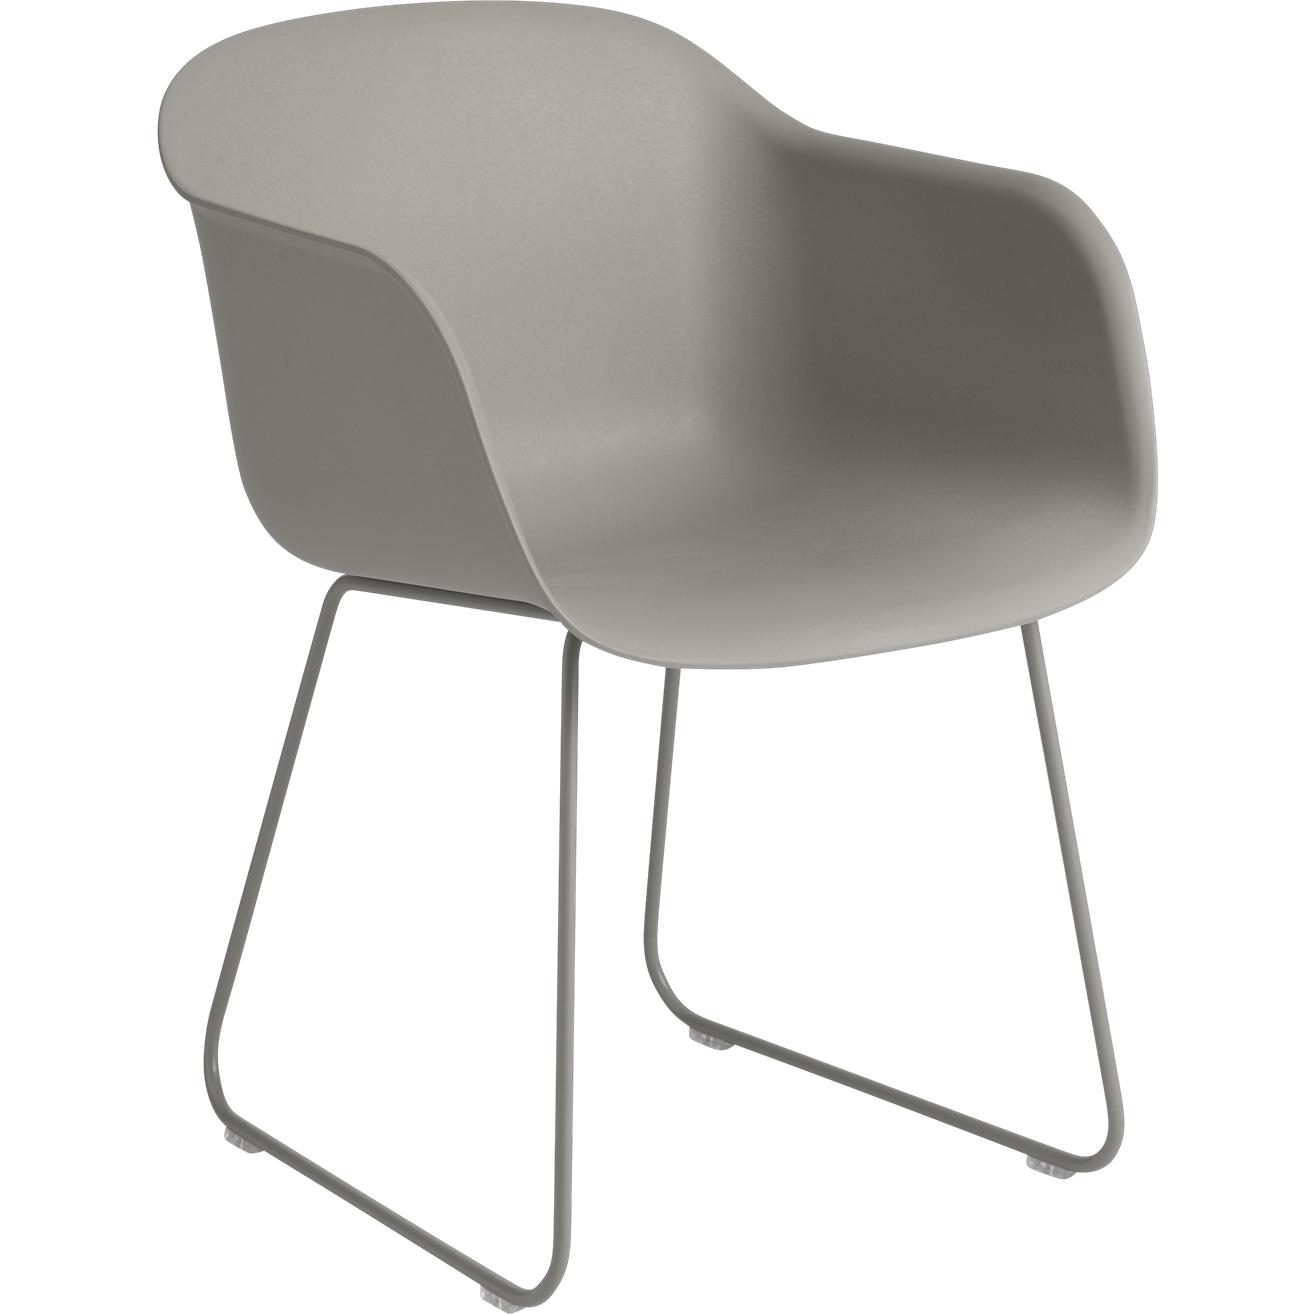 Base de traîneau de fauteuil en fibre Muuto, siège de fibre, gris